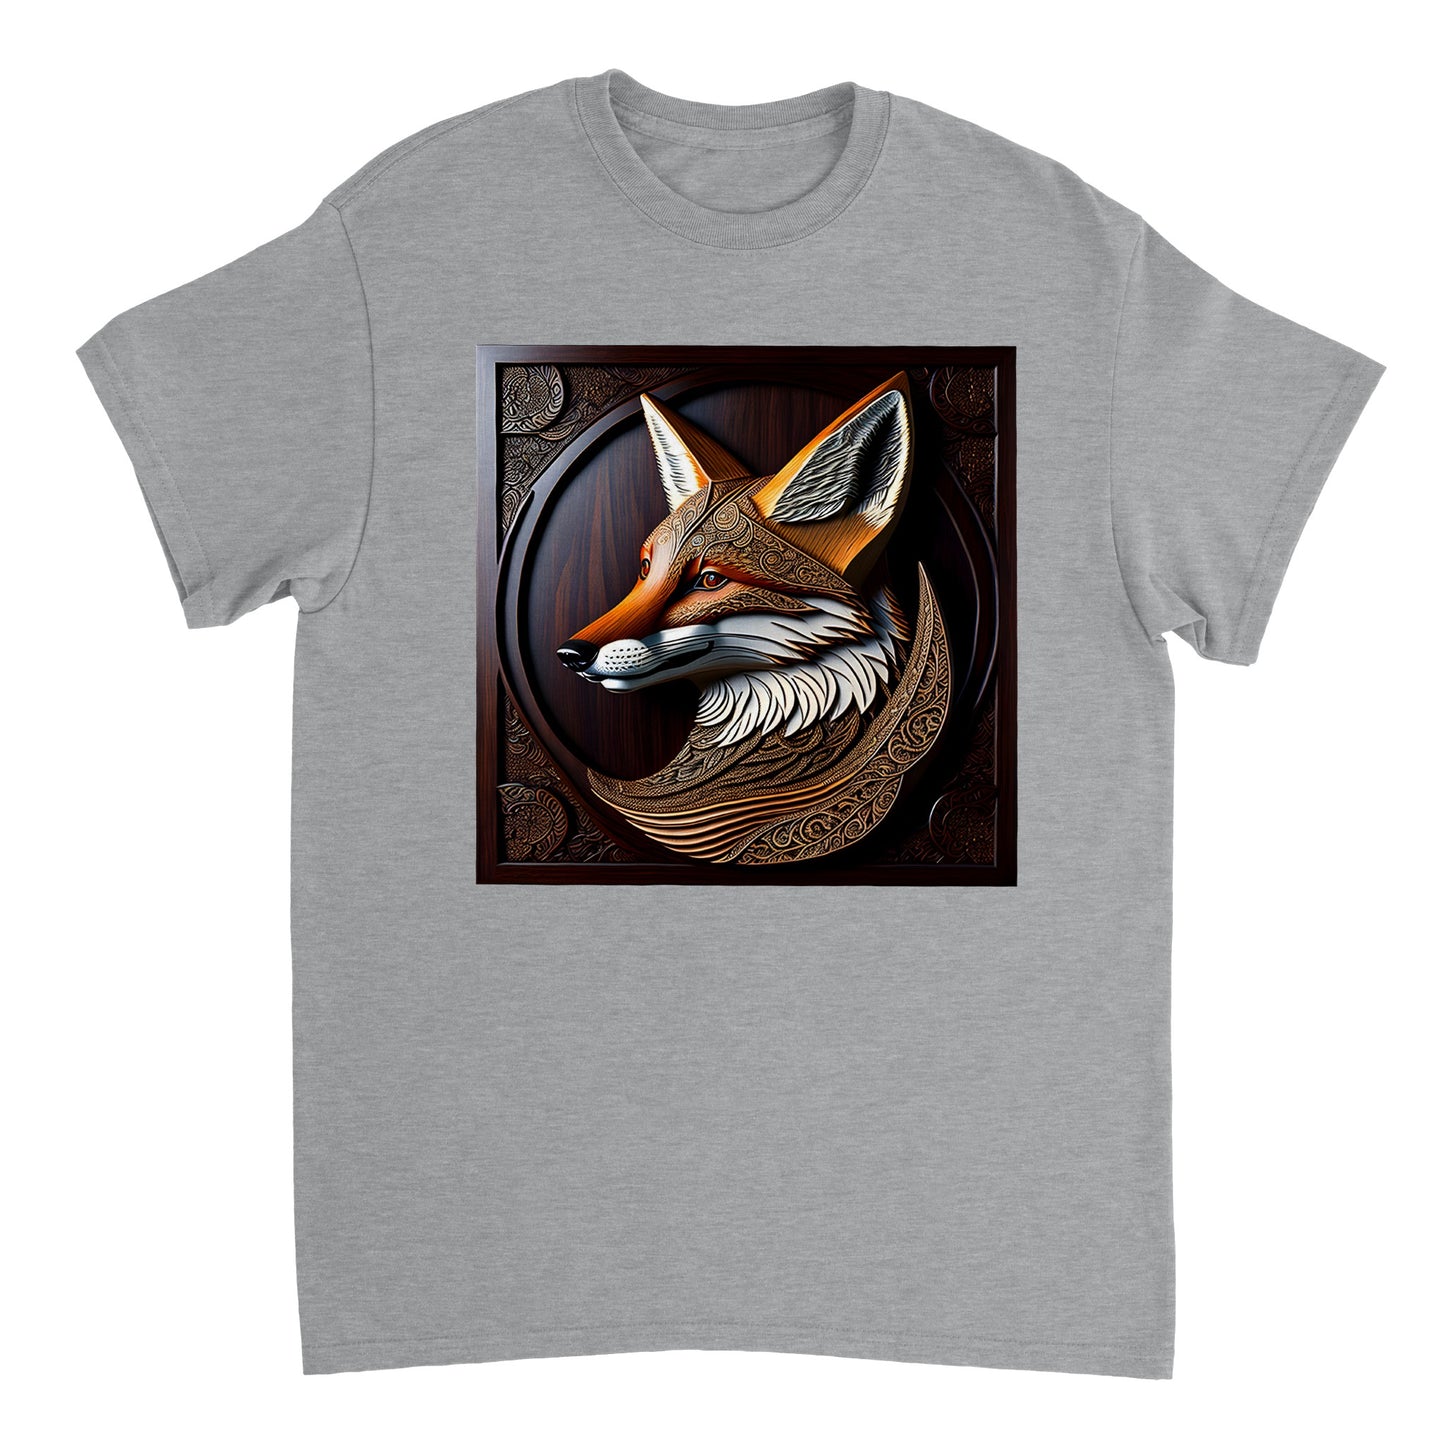 3D Wooden Animal Art - Heavyweight Unisex Crewneck T-shirt 89